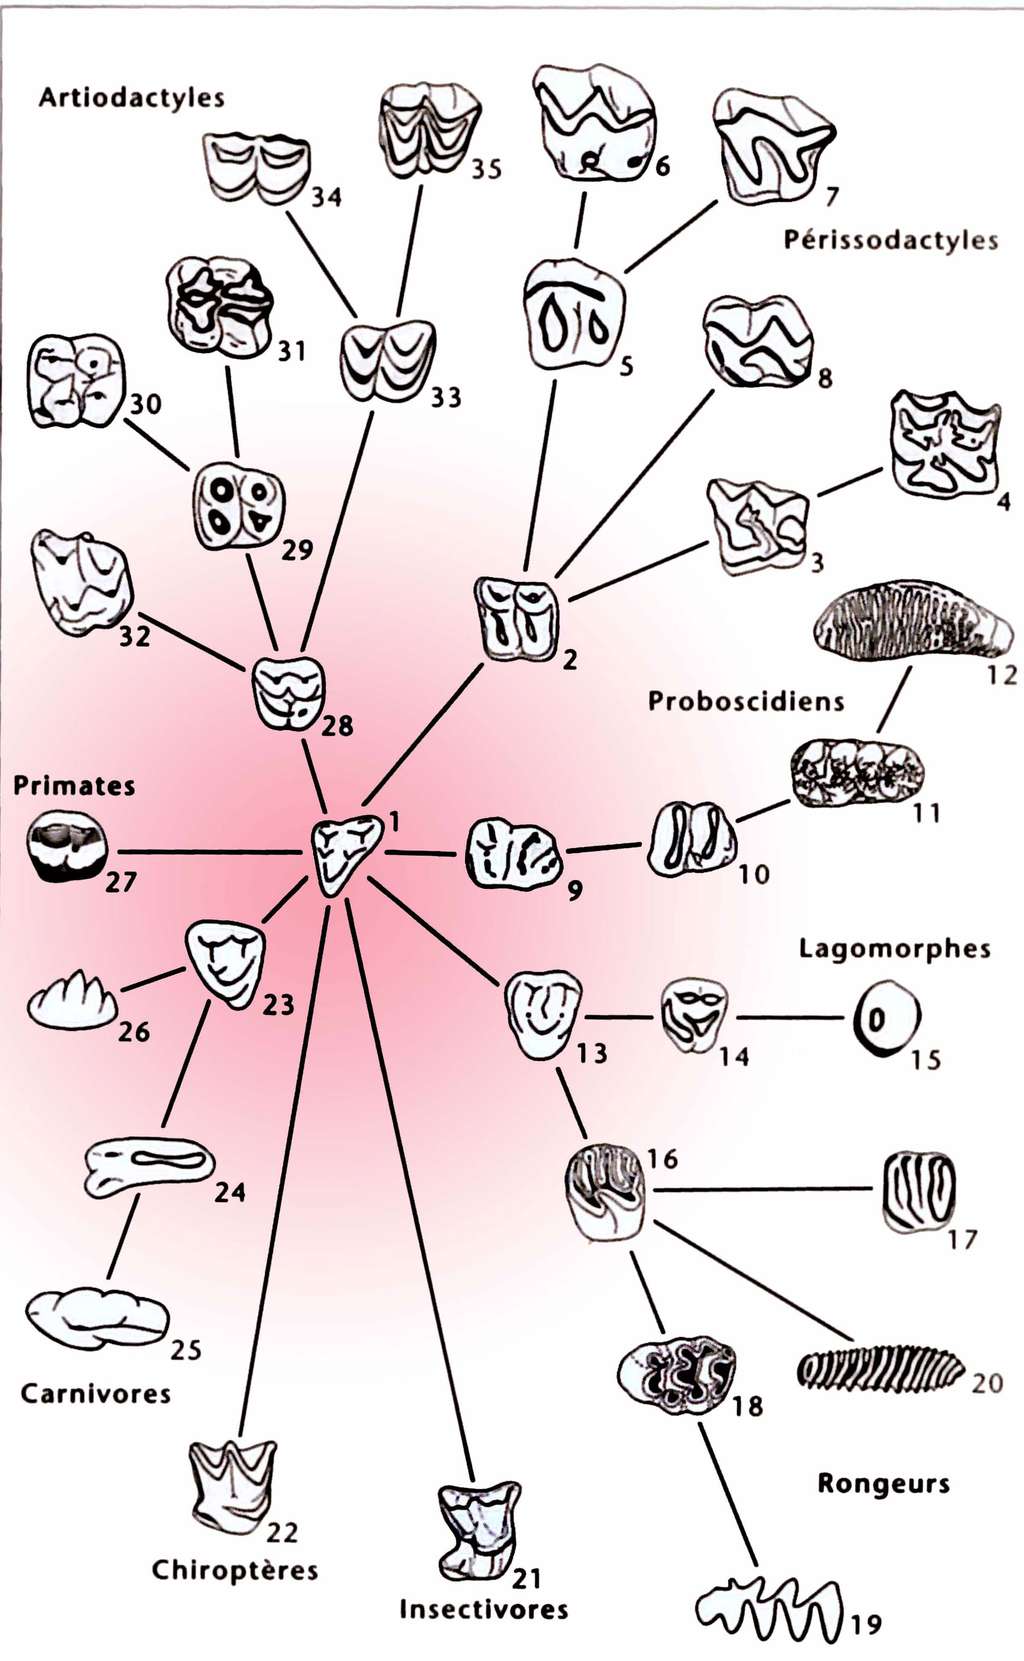 Évolution des différents modèles de molaires chez les mammifères placentaires, correspondant à autant de régimes alimentaires différemment spécialisés à partir du plan primitif, tel que celui connu chez <em>Eomaia</em> (33, Hartenberger, 2001). Chaque numéro correspond à un représentant différent au sein des différents ordres (artiodactyles, périssodactyles, proboboscidiens, primates, lagomorphes, rongeurs, insectivores, chiroptères, carnivores). © Jean-Louis Hartenberger